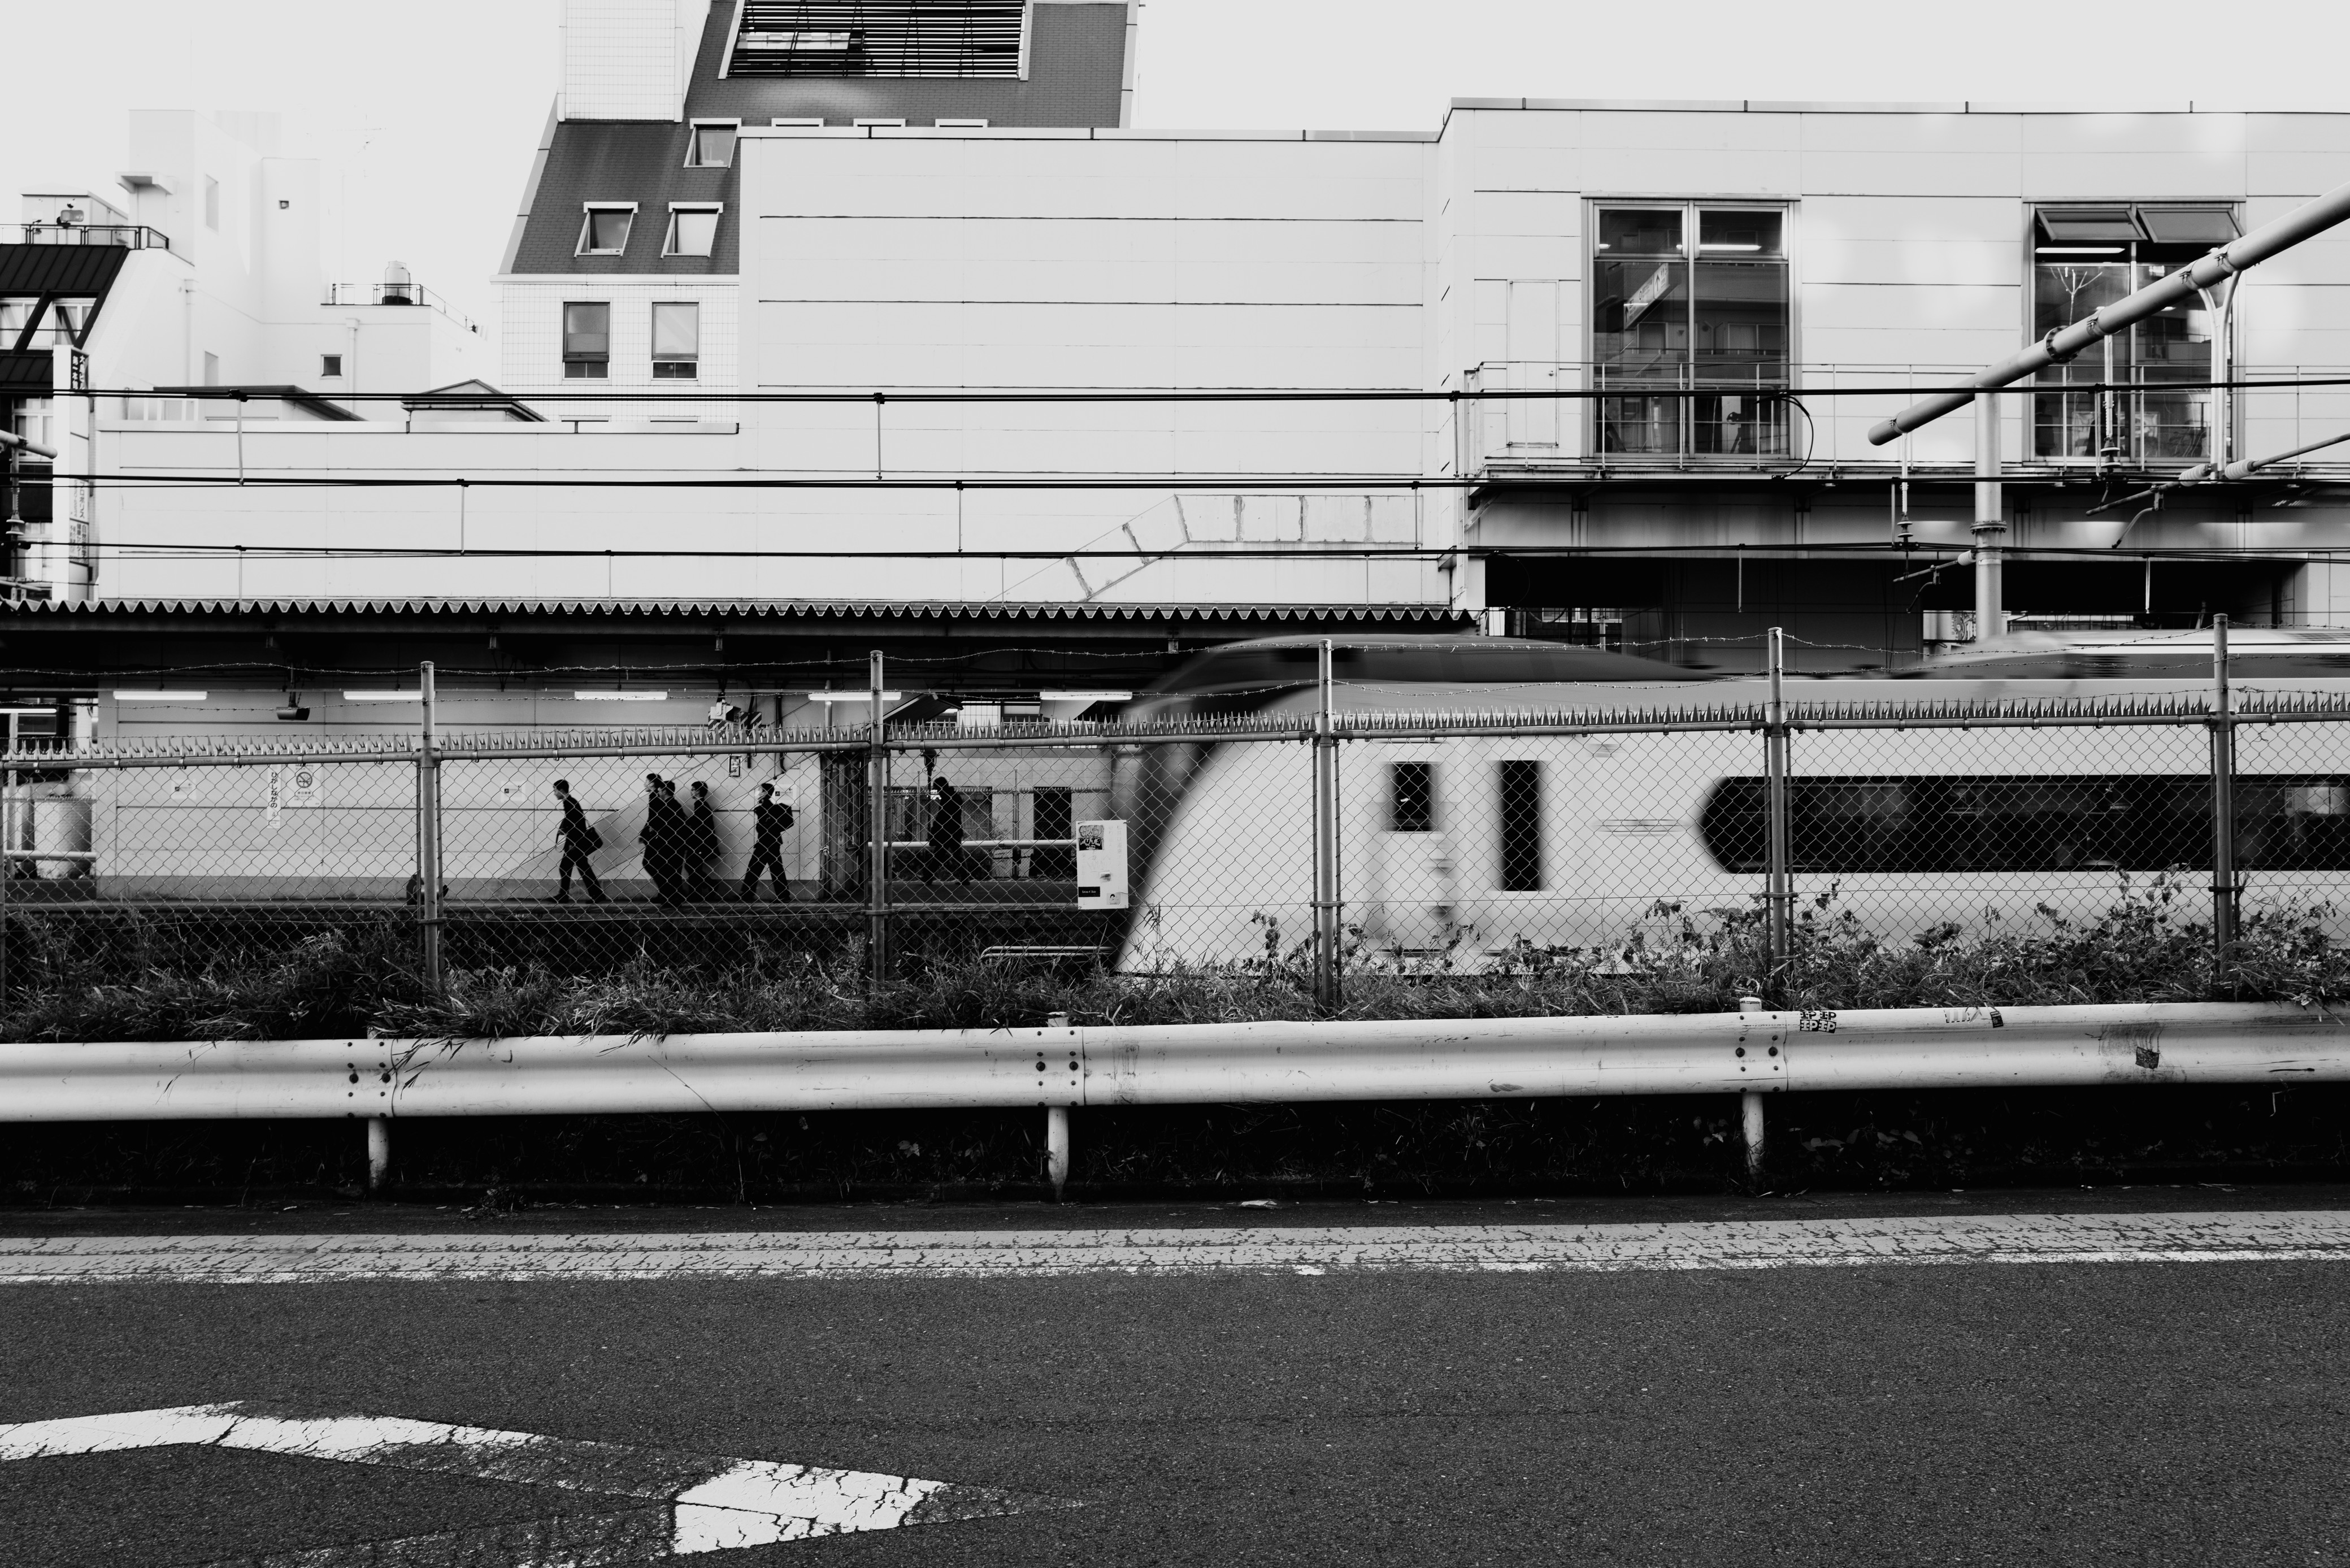 A train passing Higashi-Nakano Station.